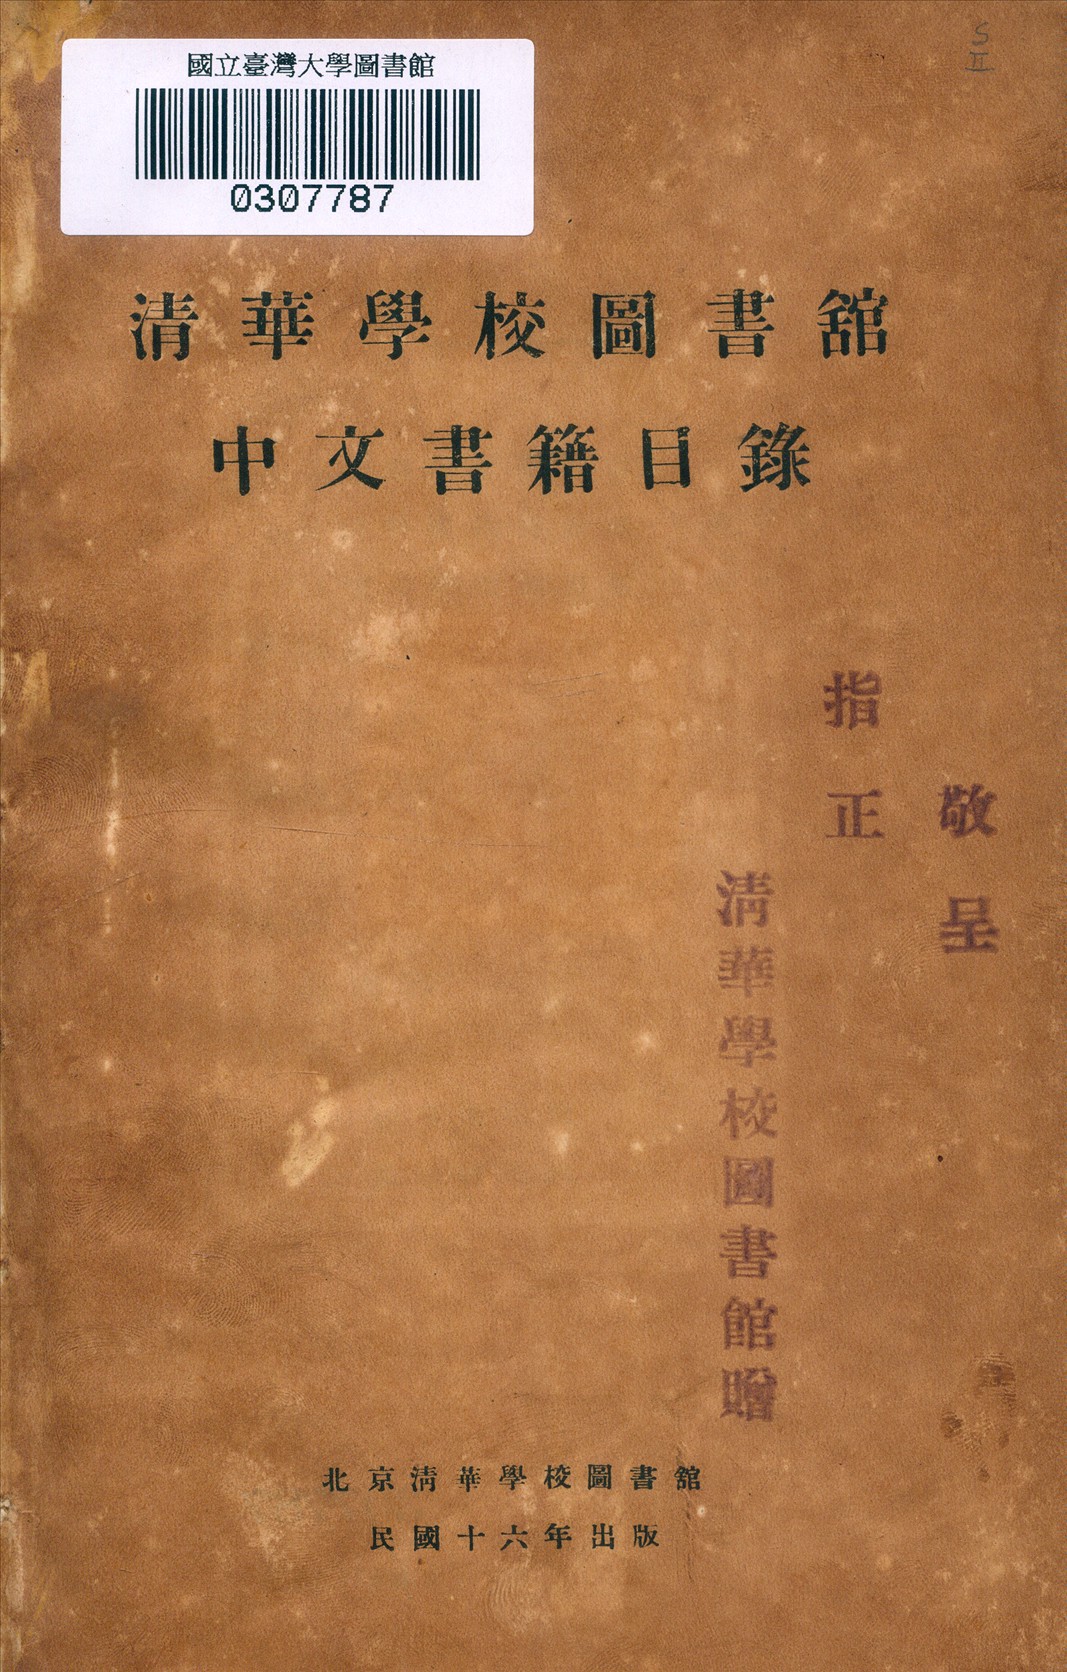 清華學校圖書館中文書籍目錄